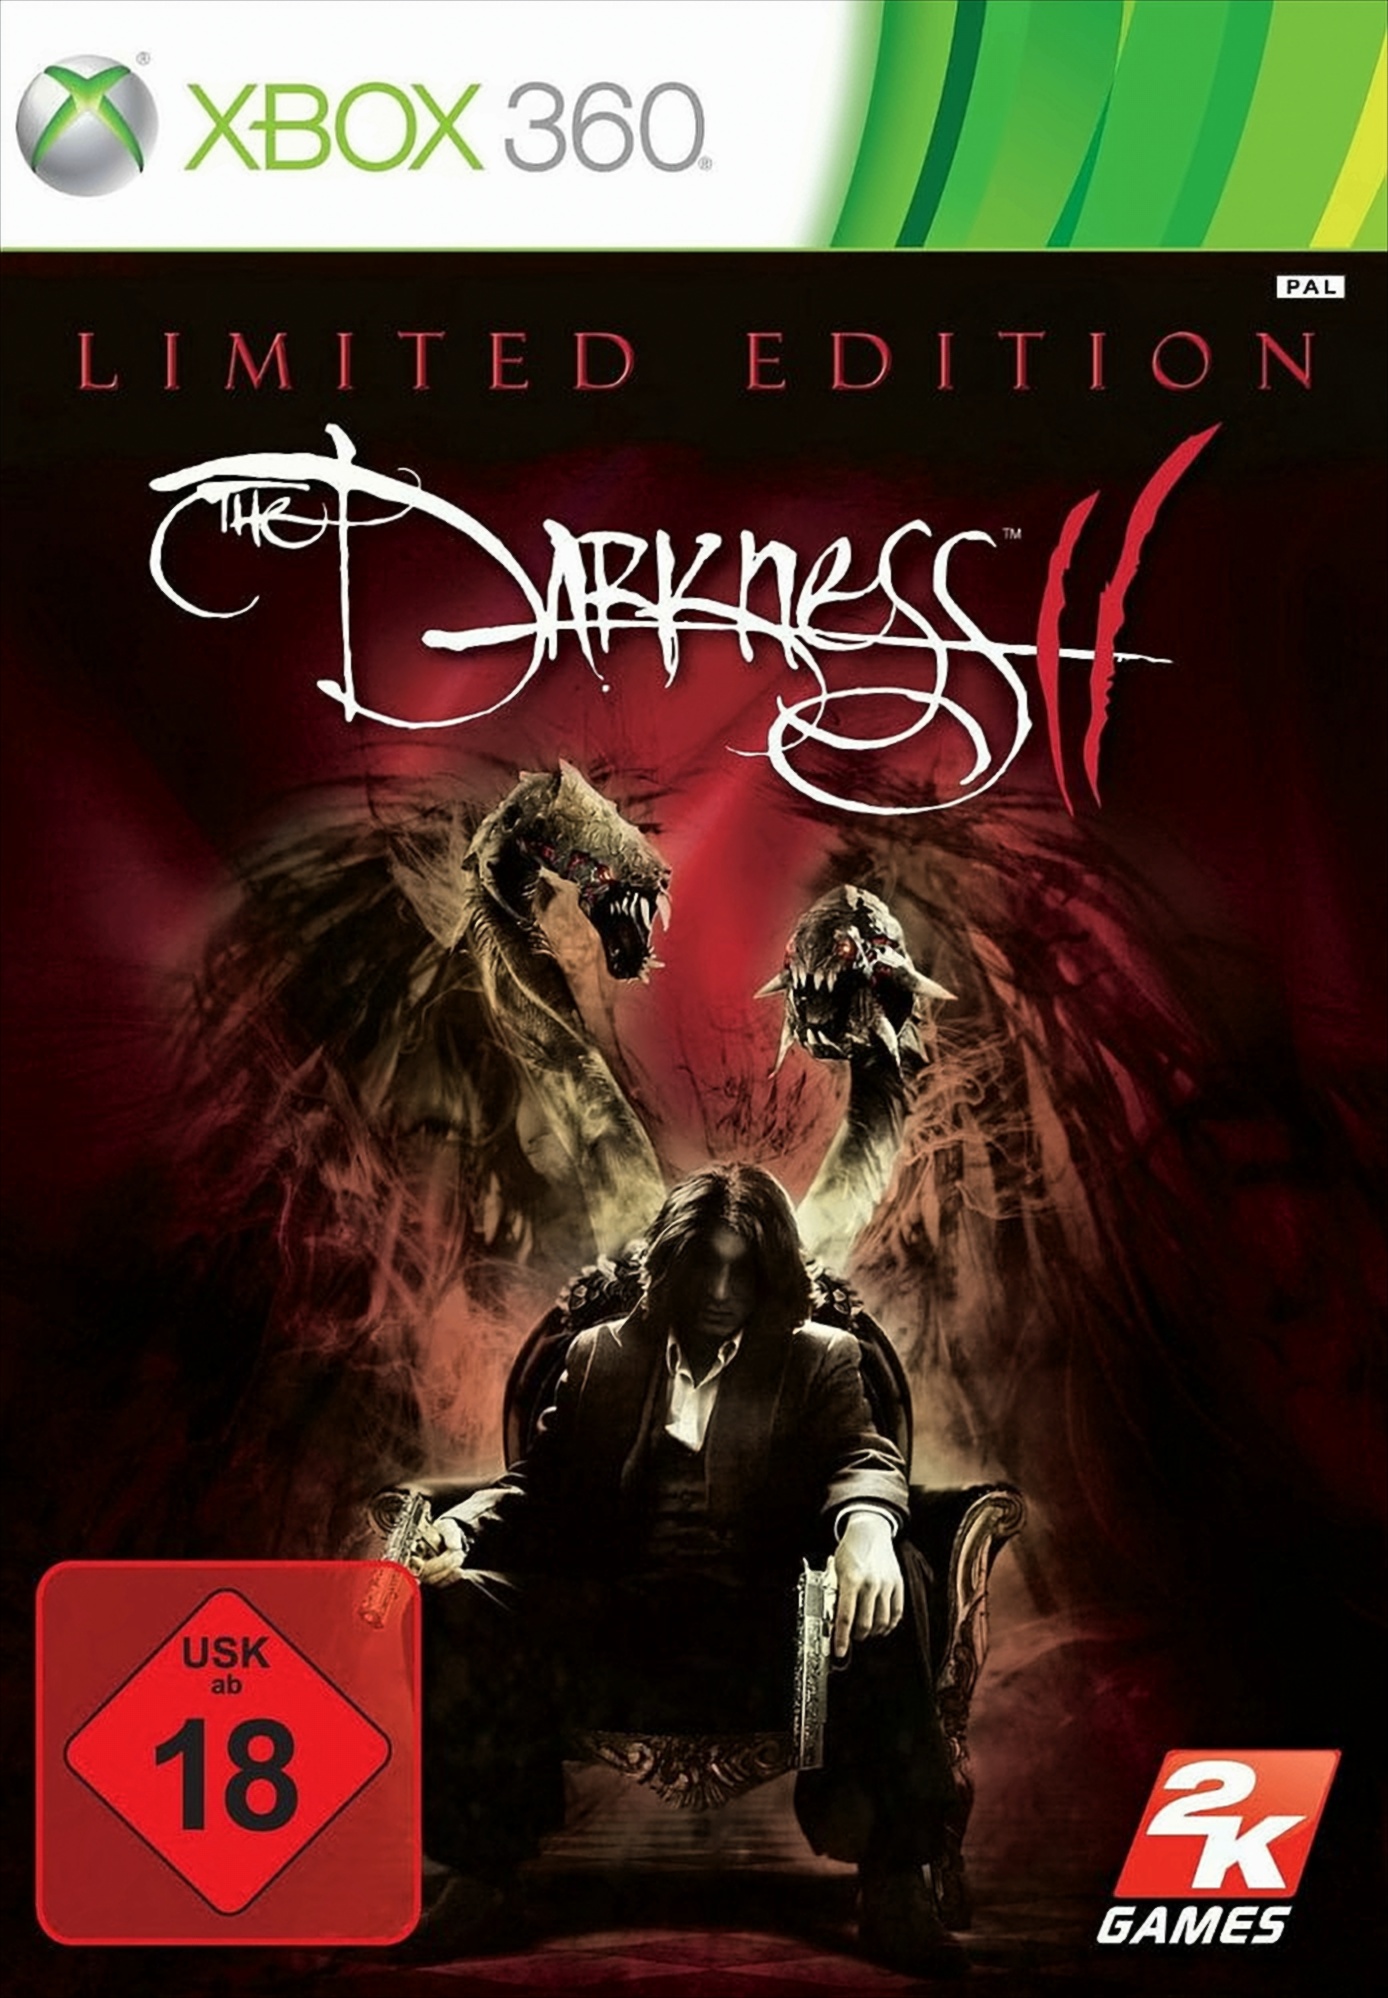 The Darkness II - Limited Edition von 2K Games